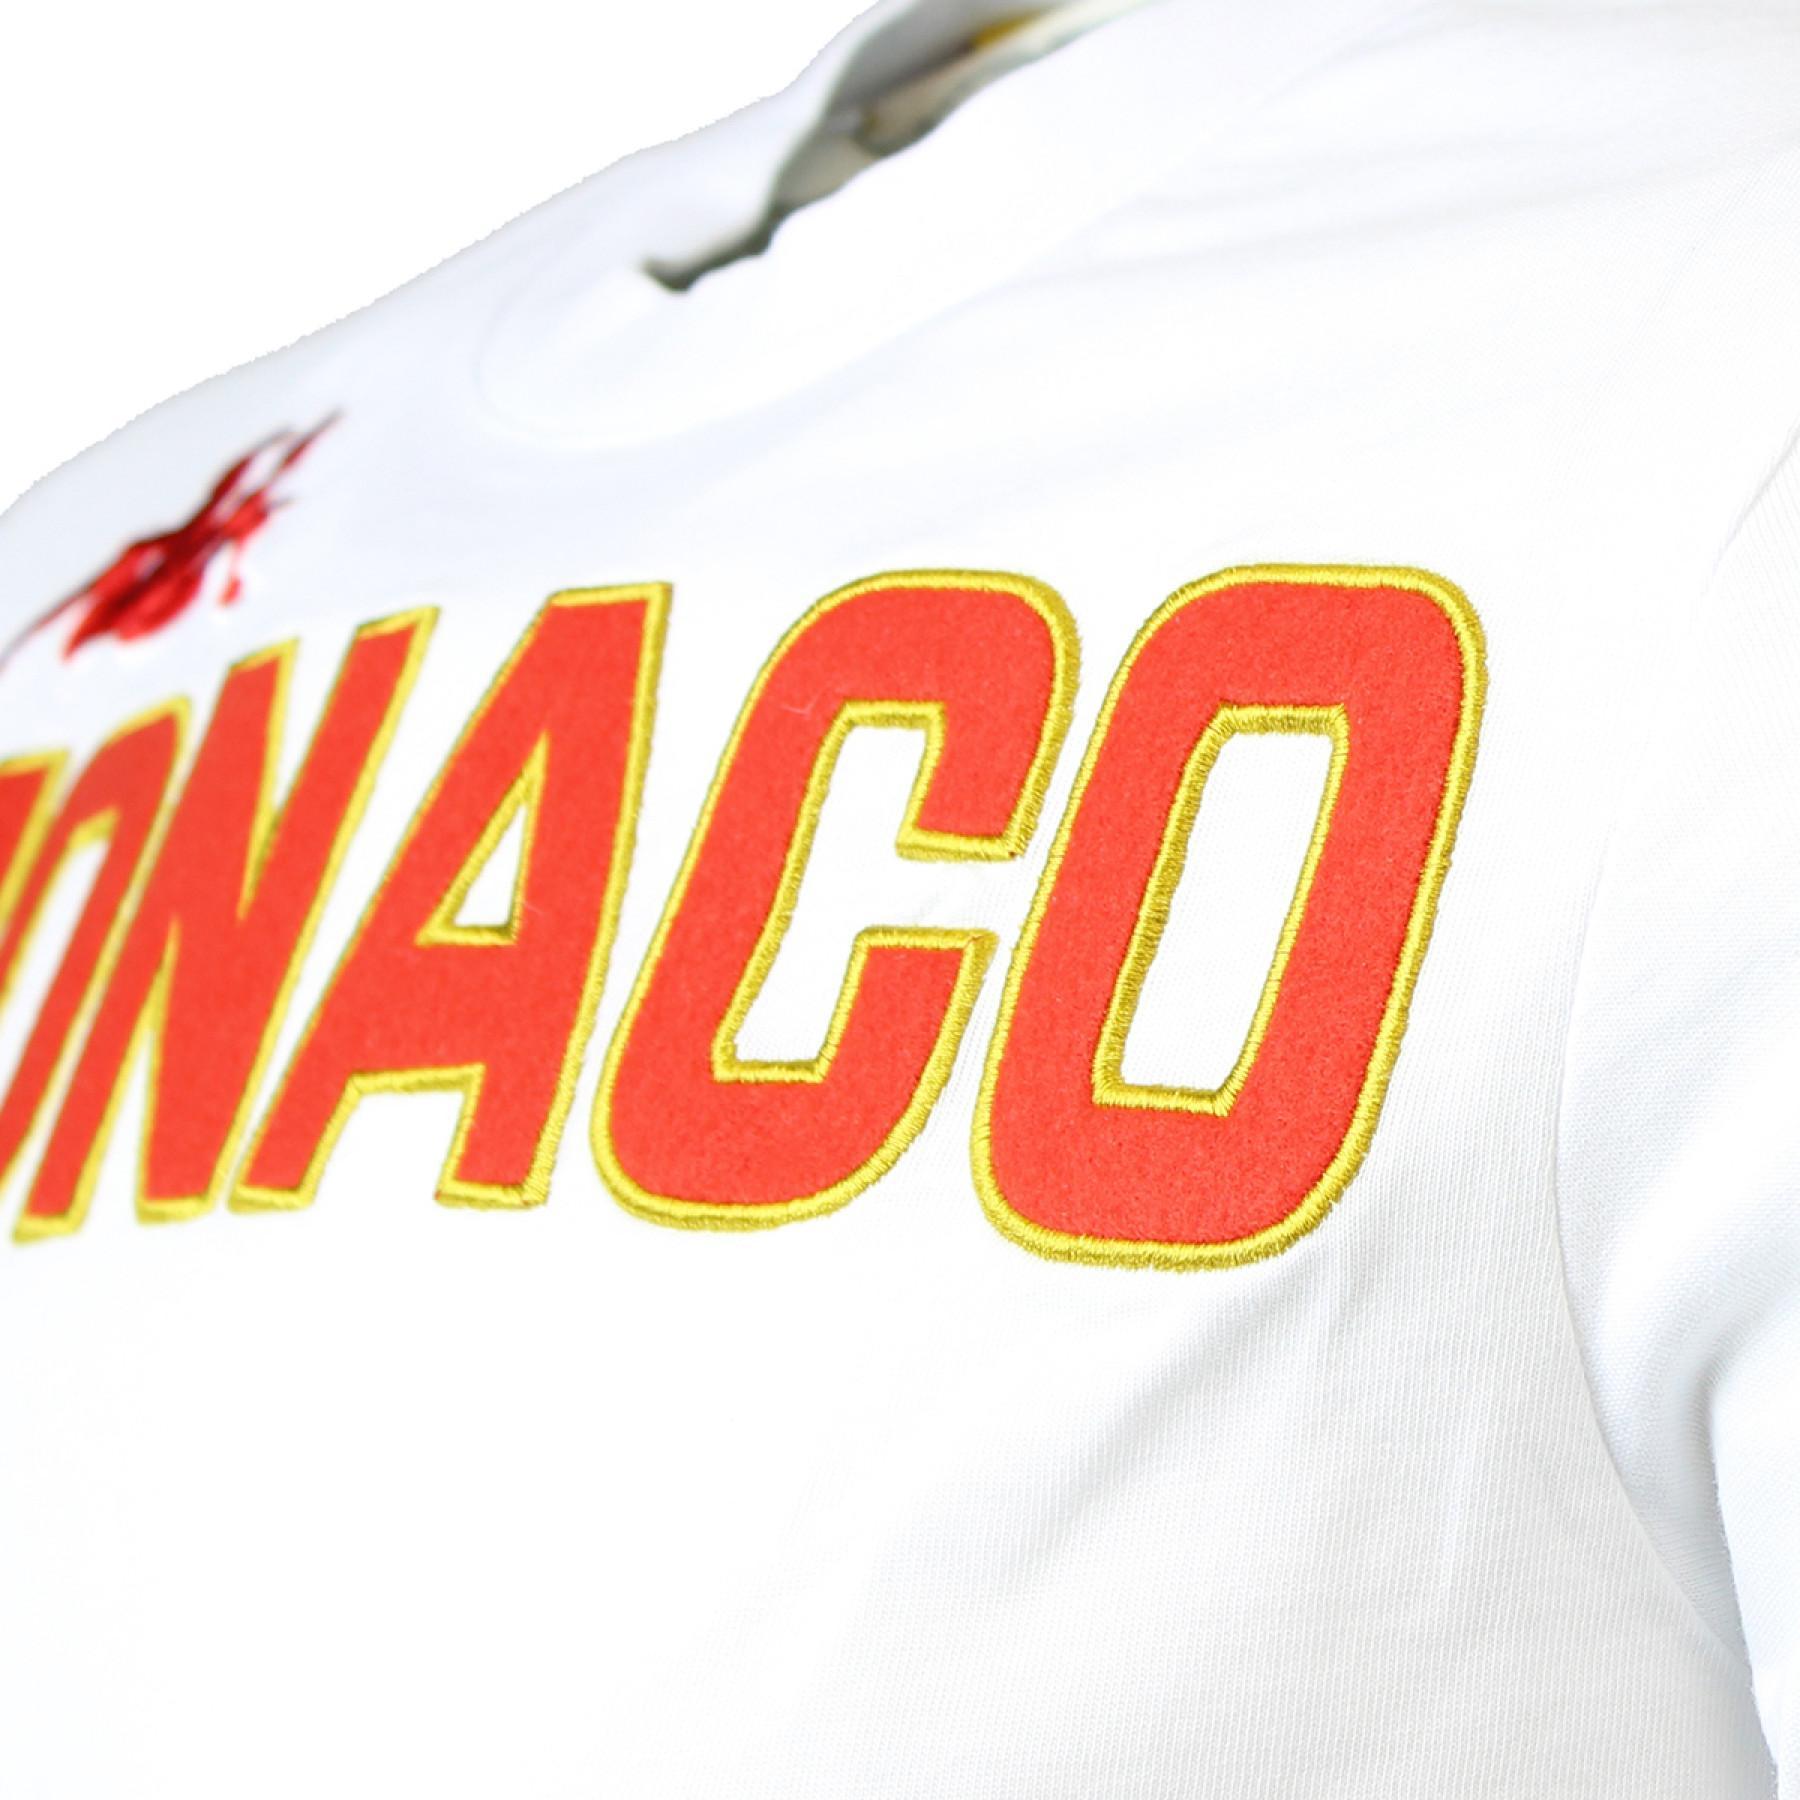 T-shirt criança AS Monaco 2020/21 eroi